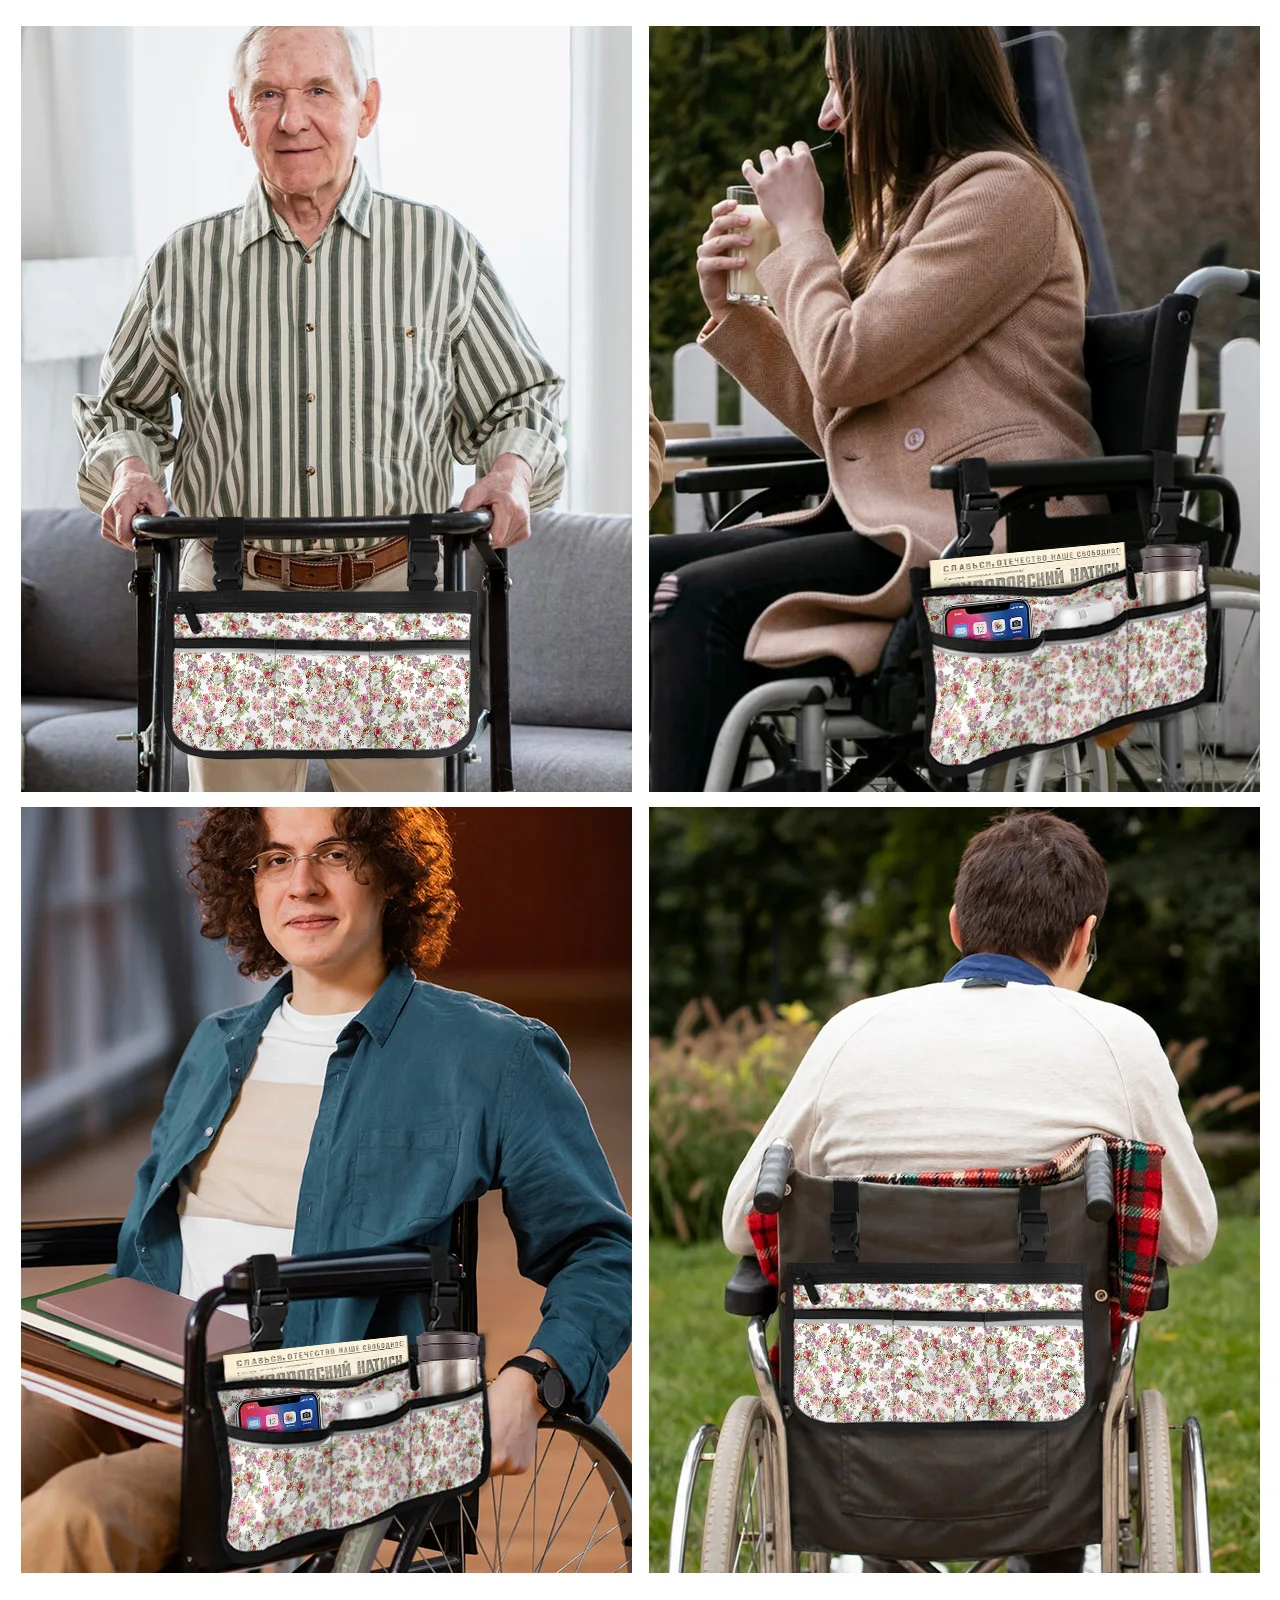 Боковой подлокотник для инвалидной коляски с градиентным рисунком в виде цветочных листьев, множество карманов со светоотражающими полосками, подвесная сумка для хранения детской коляски